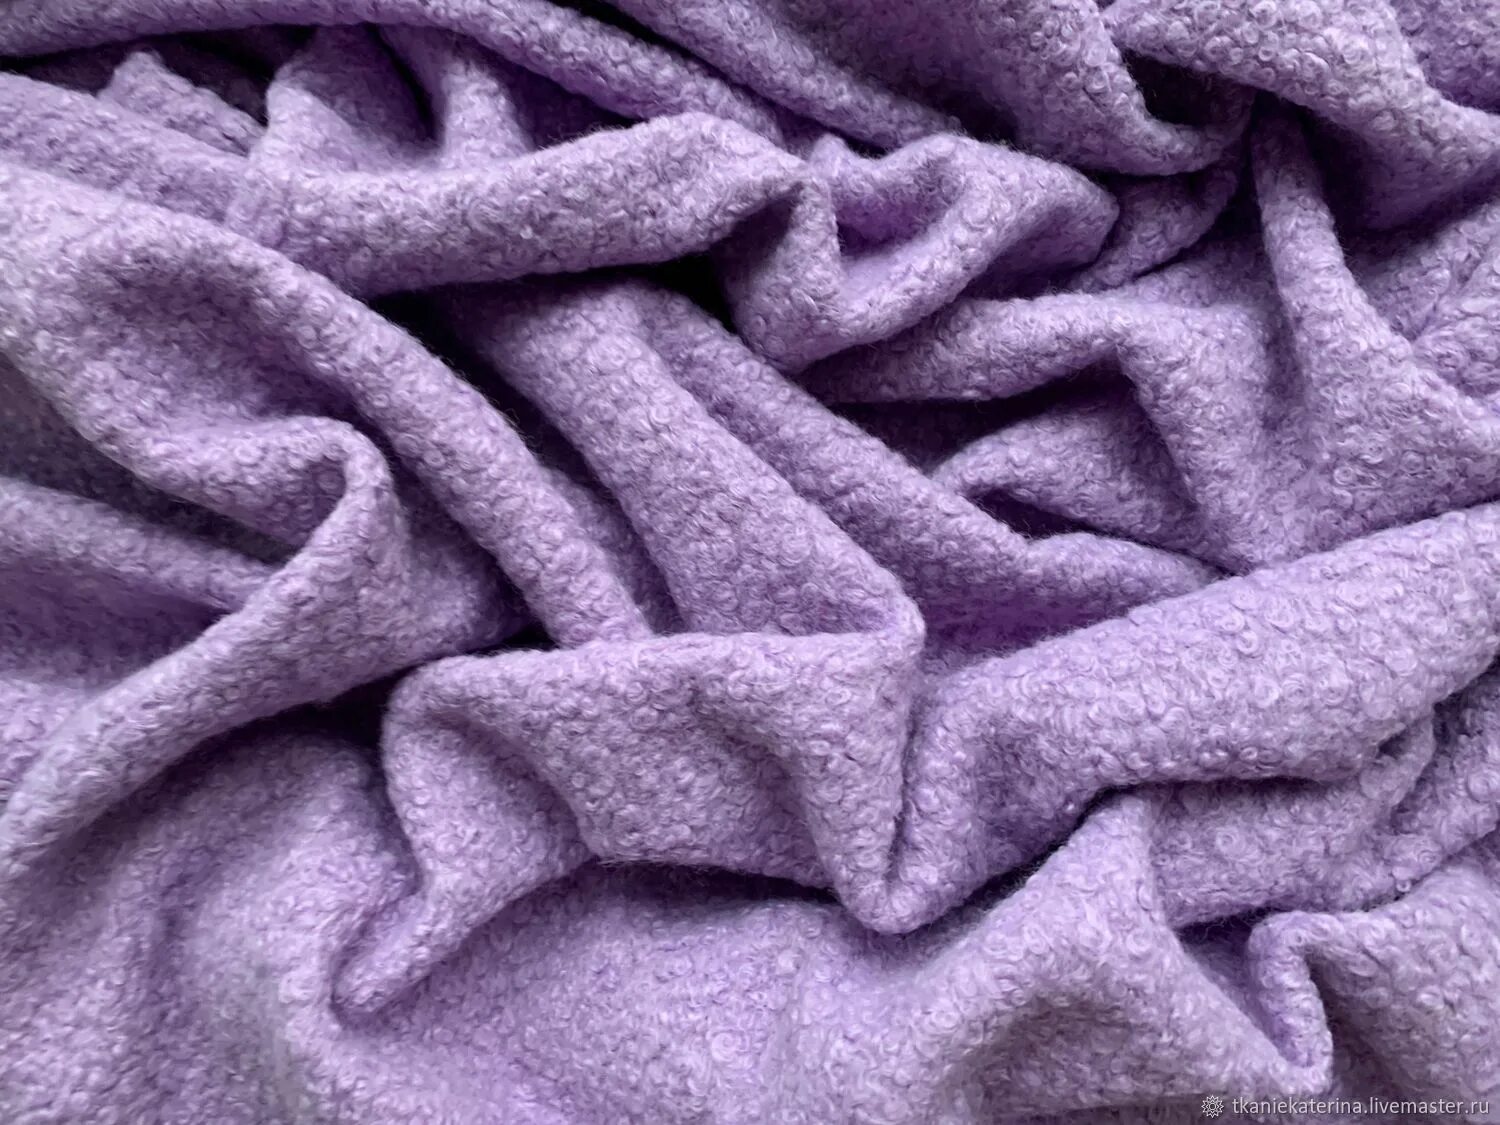 Ткань пальтовая эко мех каракуль. Пальтовая ткань фиолетовая. Мех ткань. Пальтовая ткань каракуль. Фиолетовая шерсть